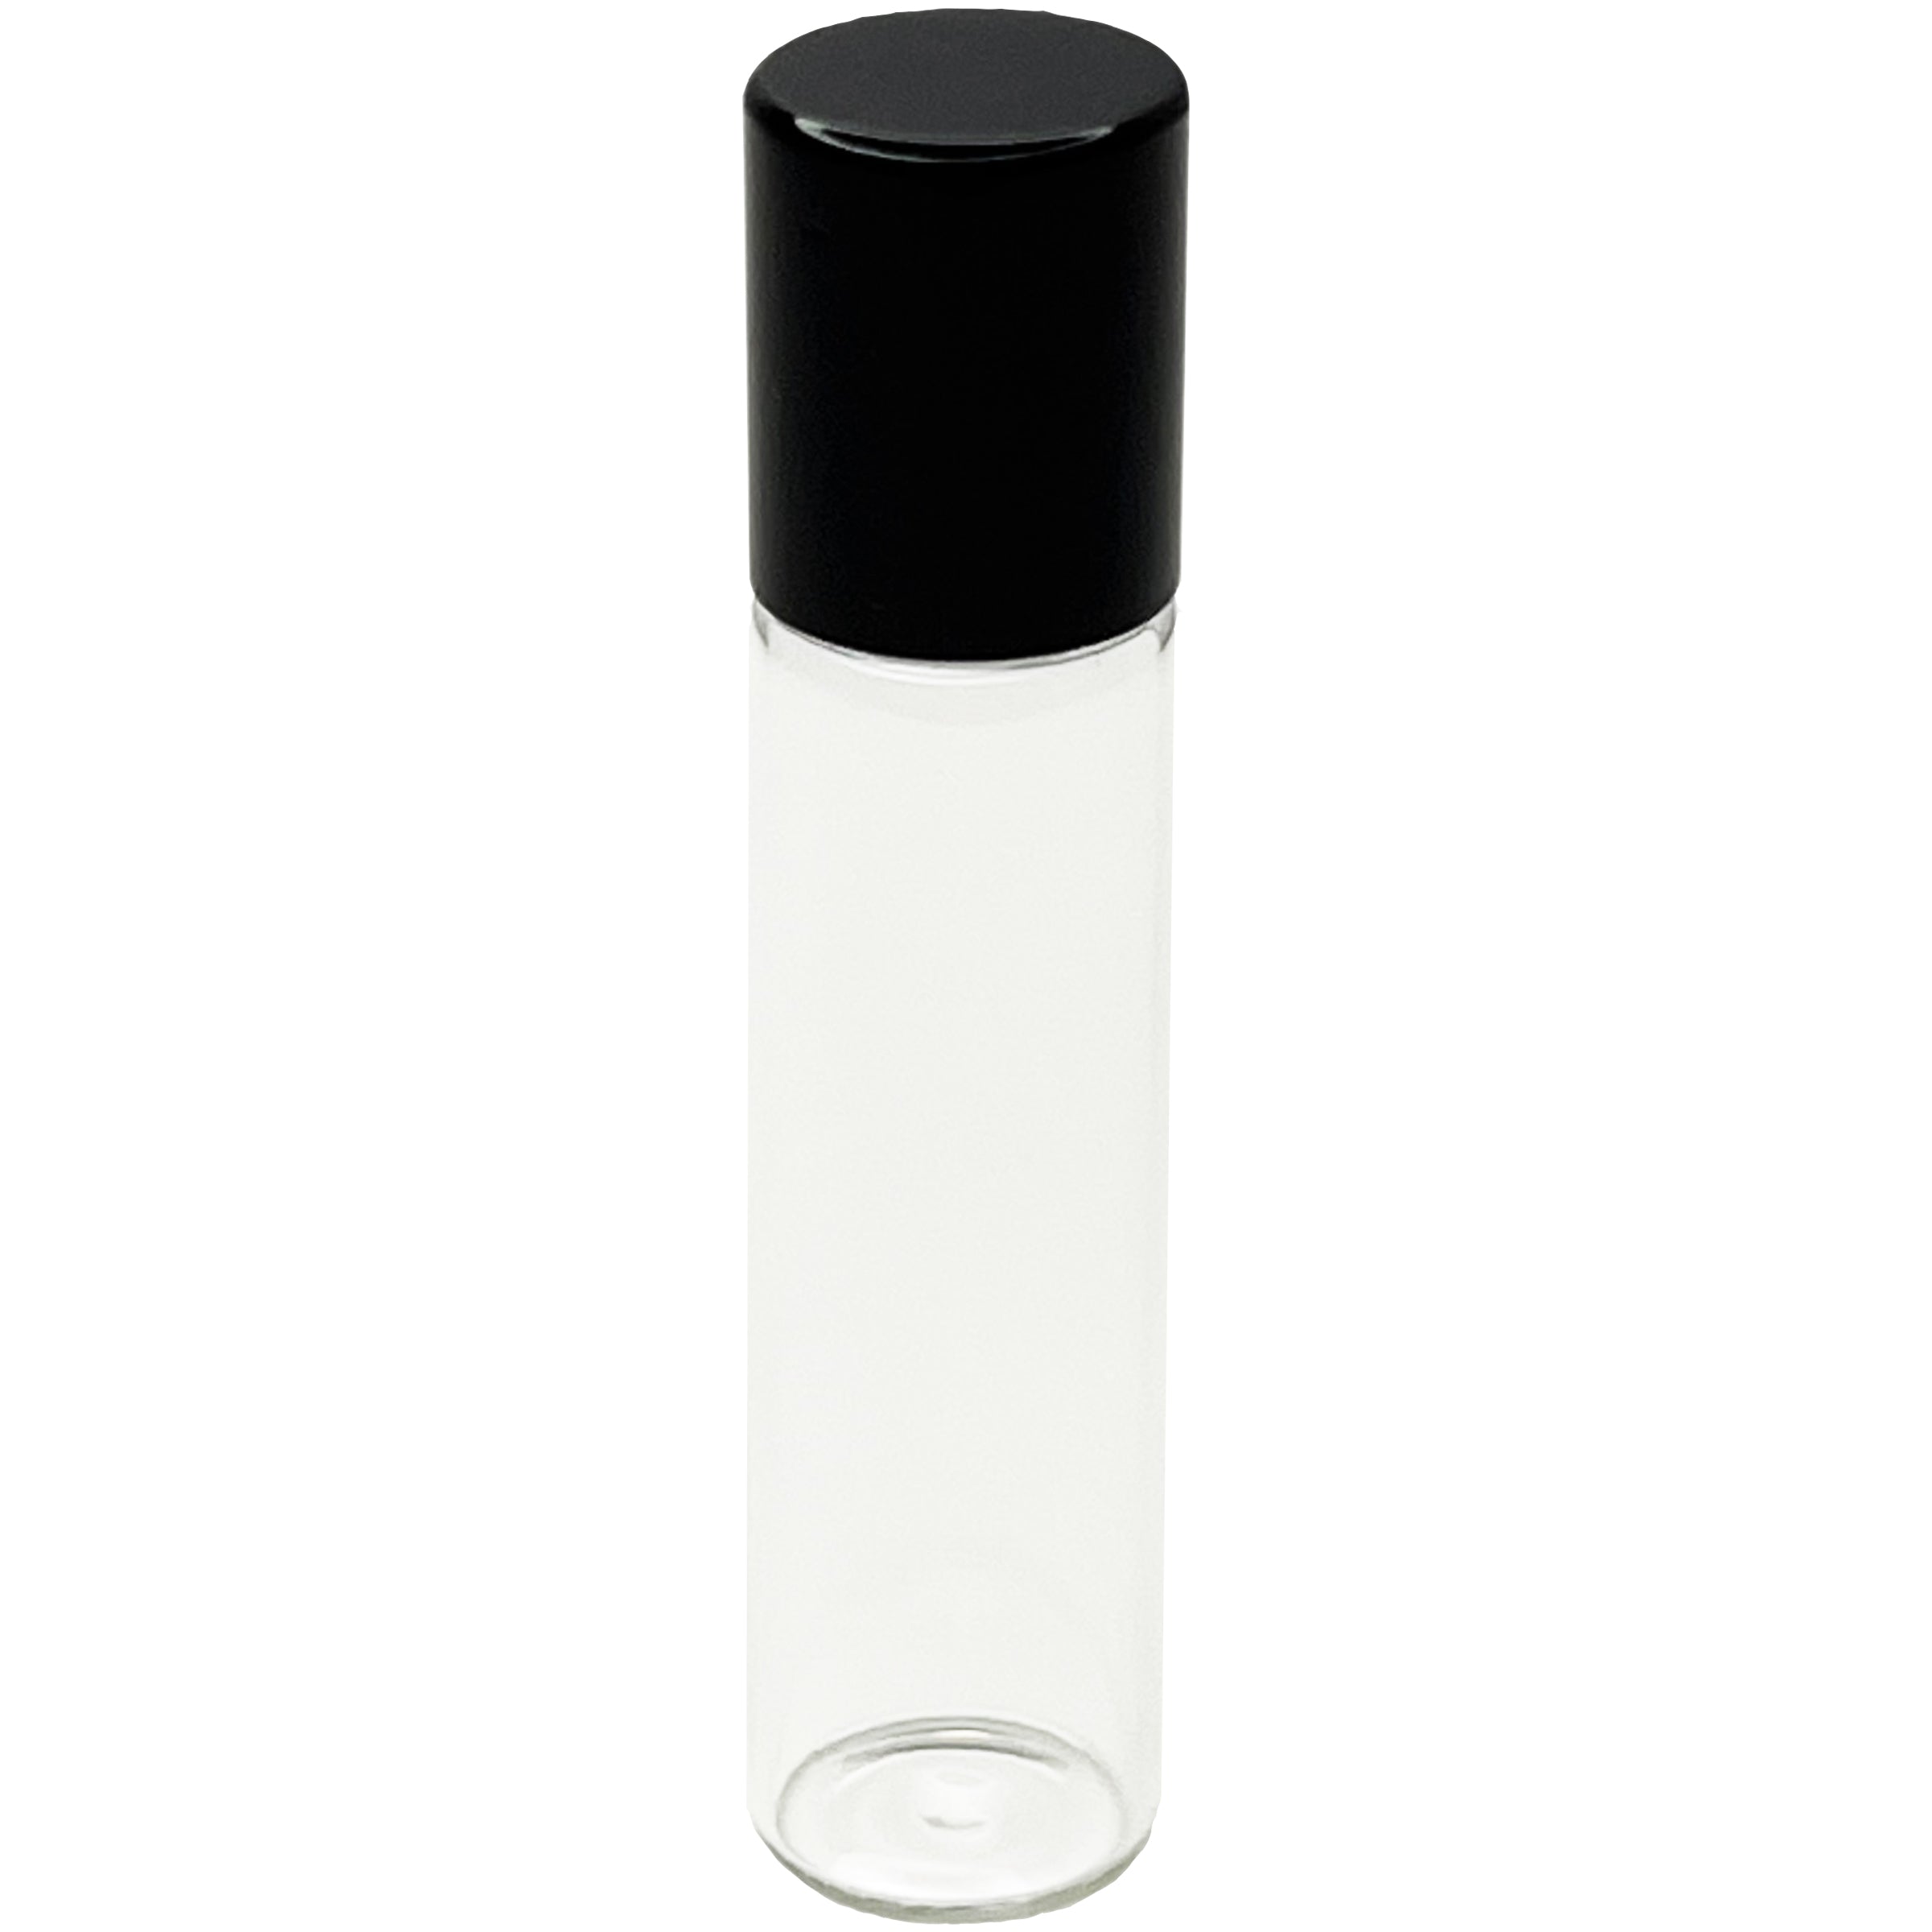 6ml 0.2oz glass tube roll on roller bottles for perfume oils